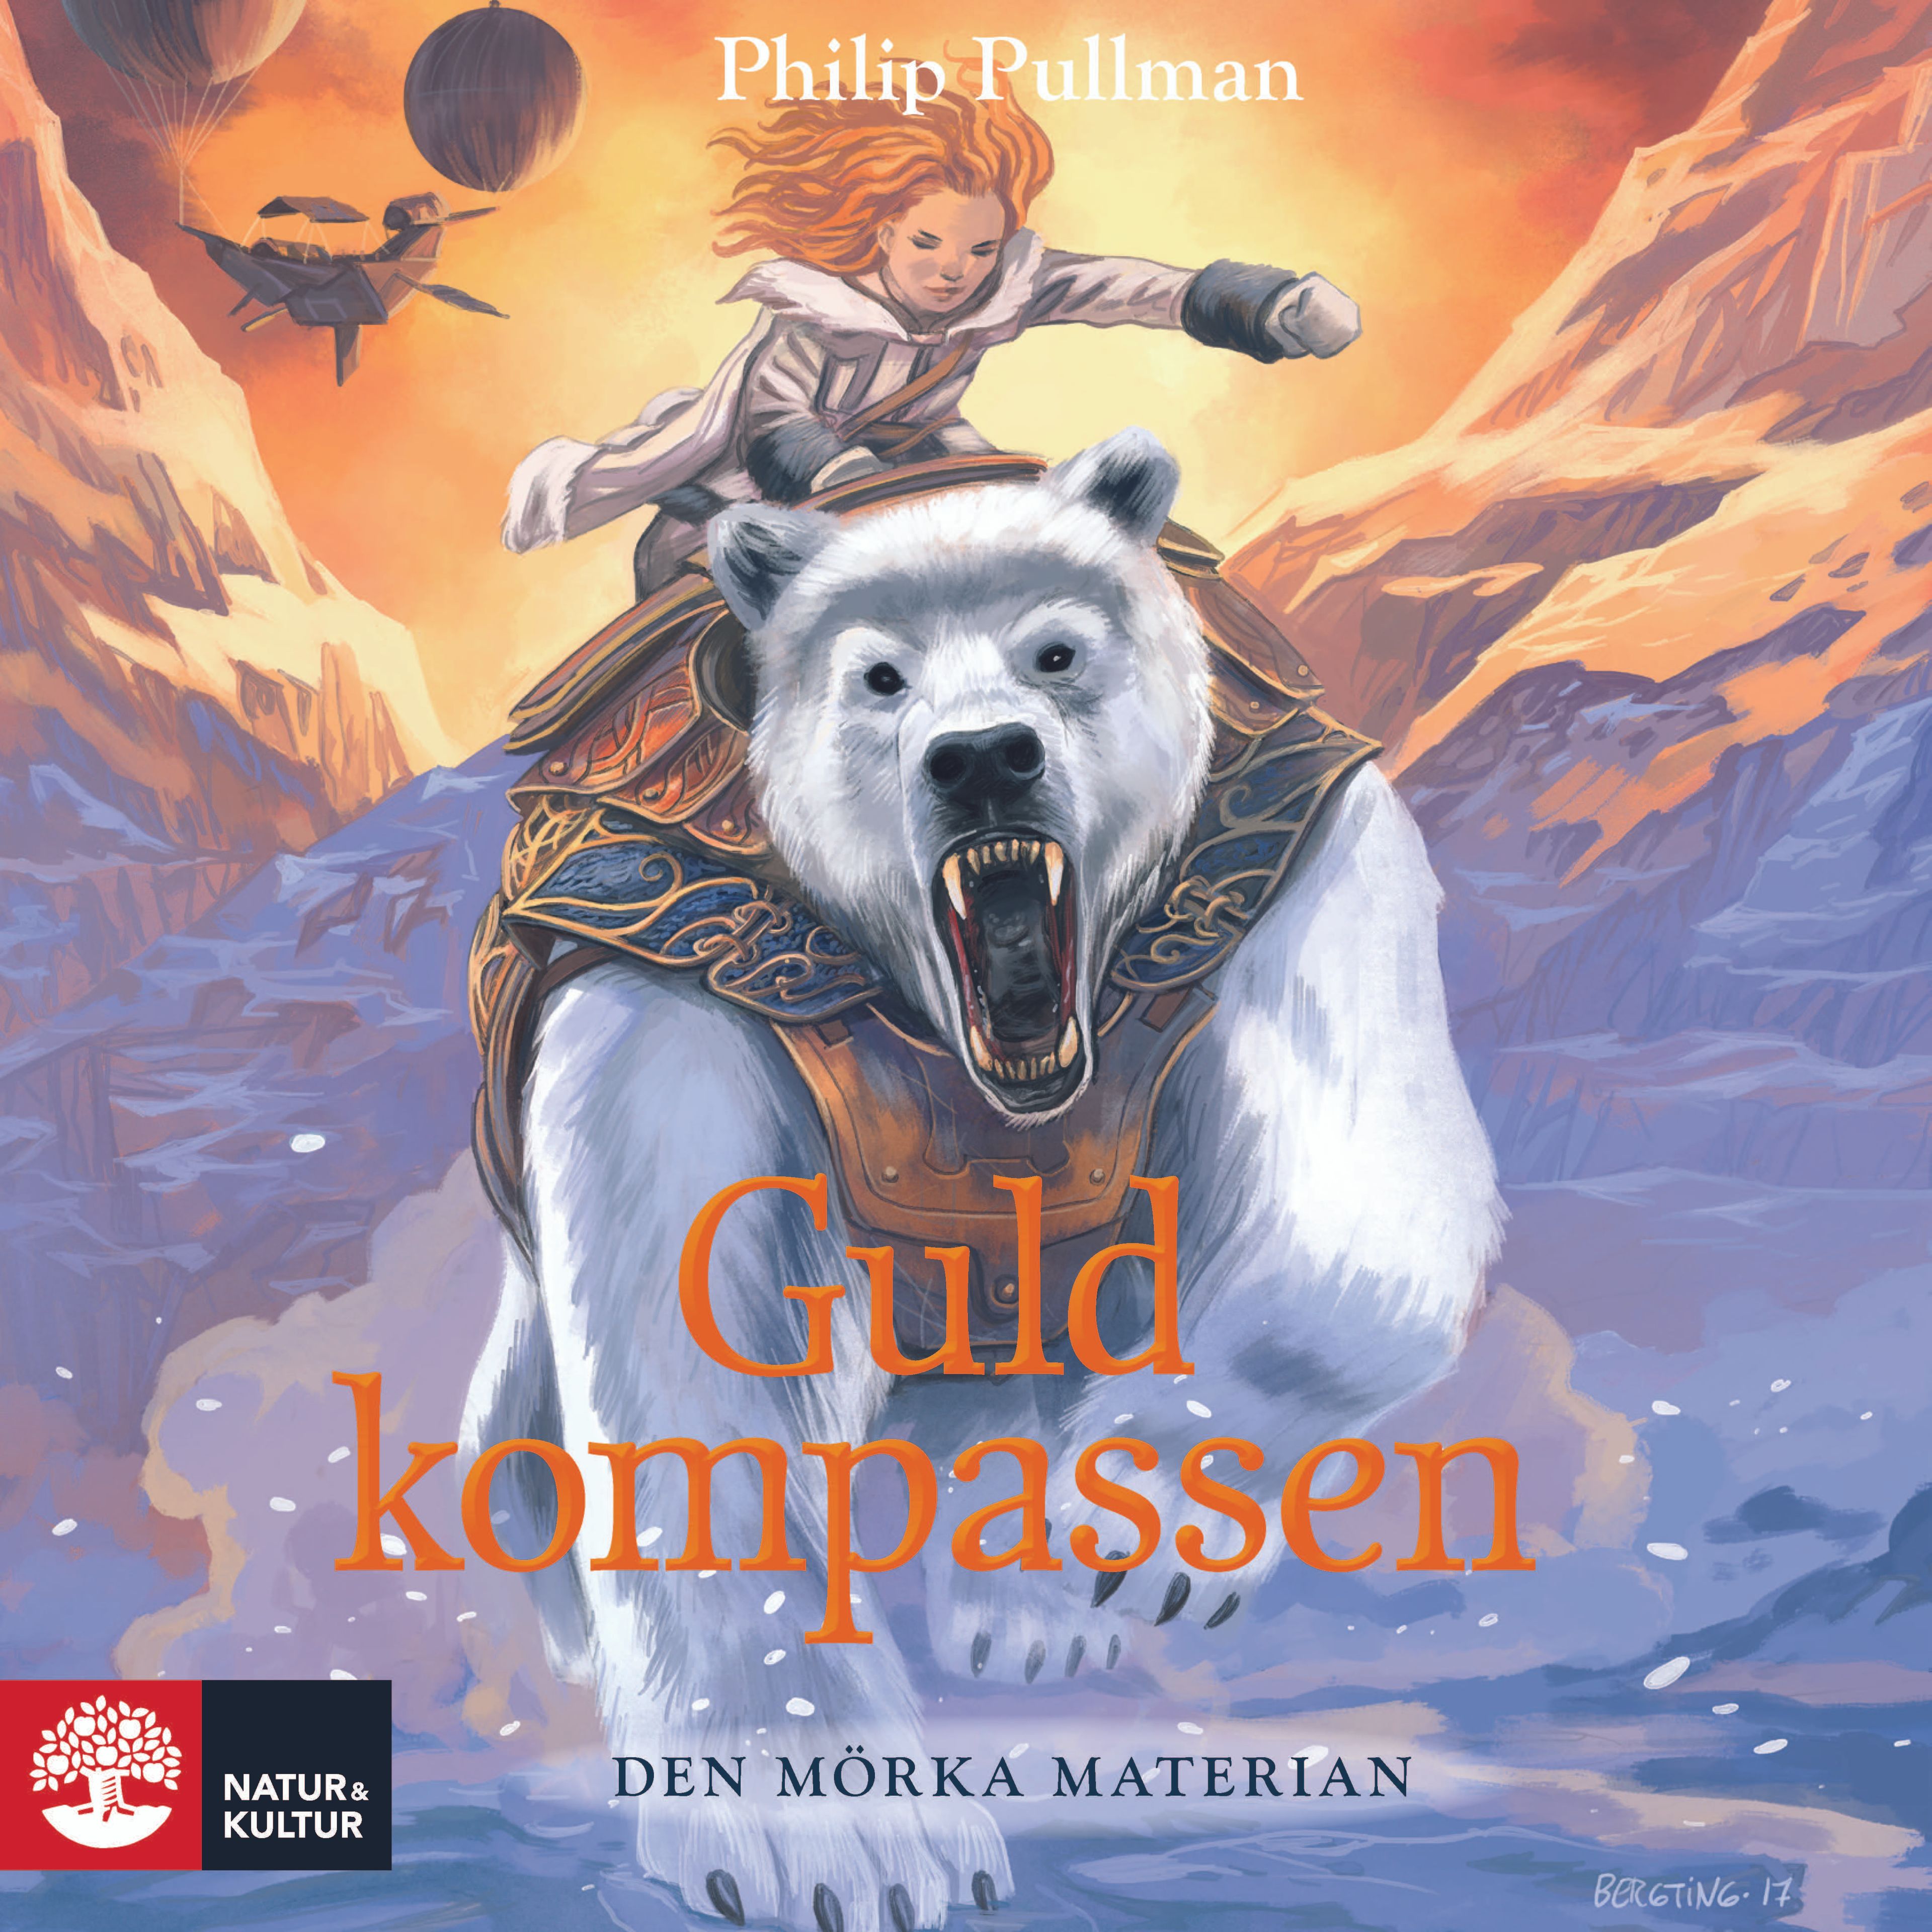 Guldkompassen, audiobook by Philip Pullman